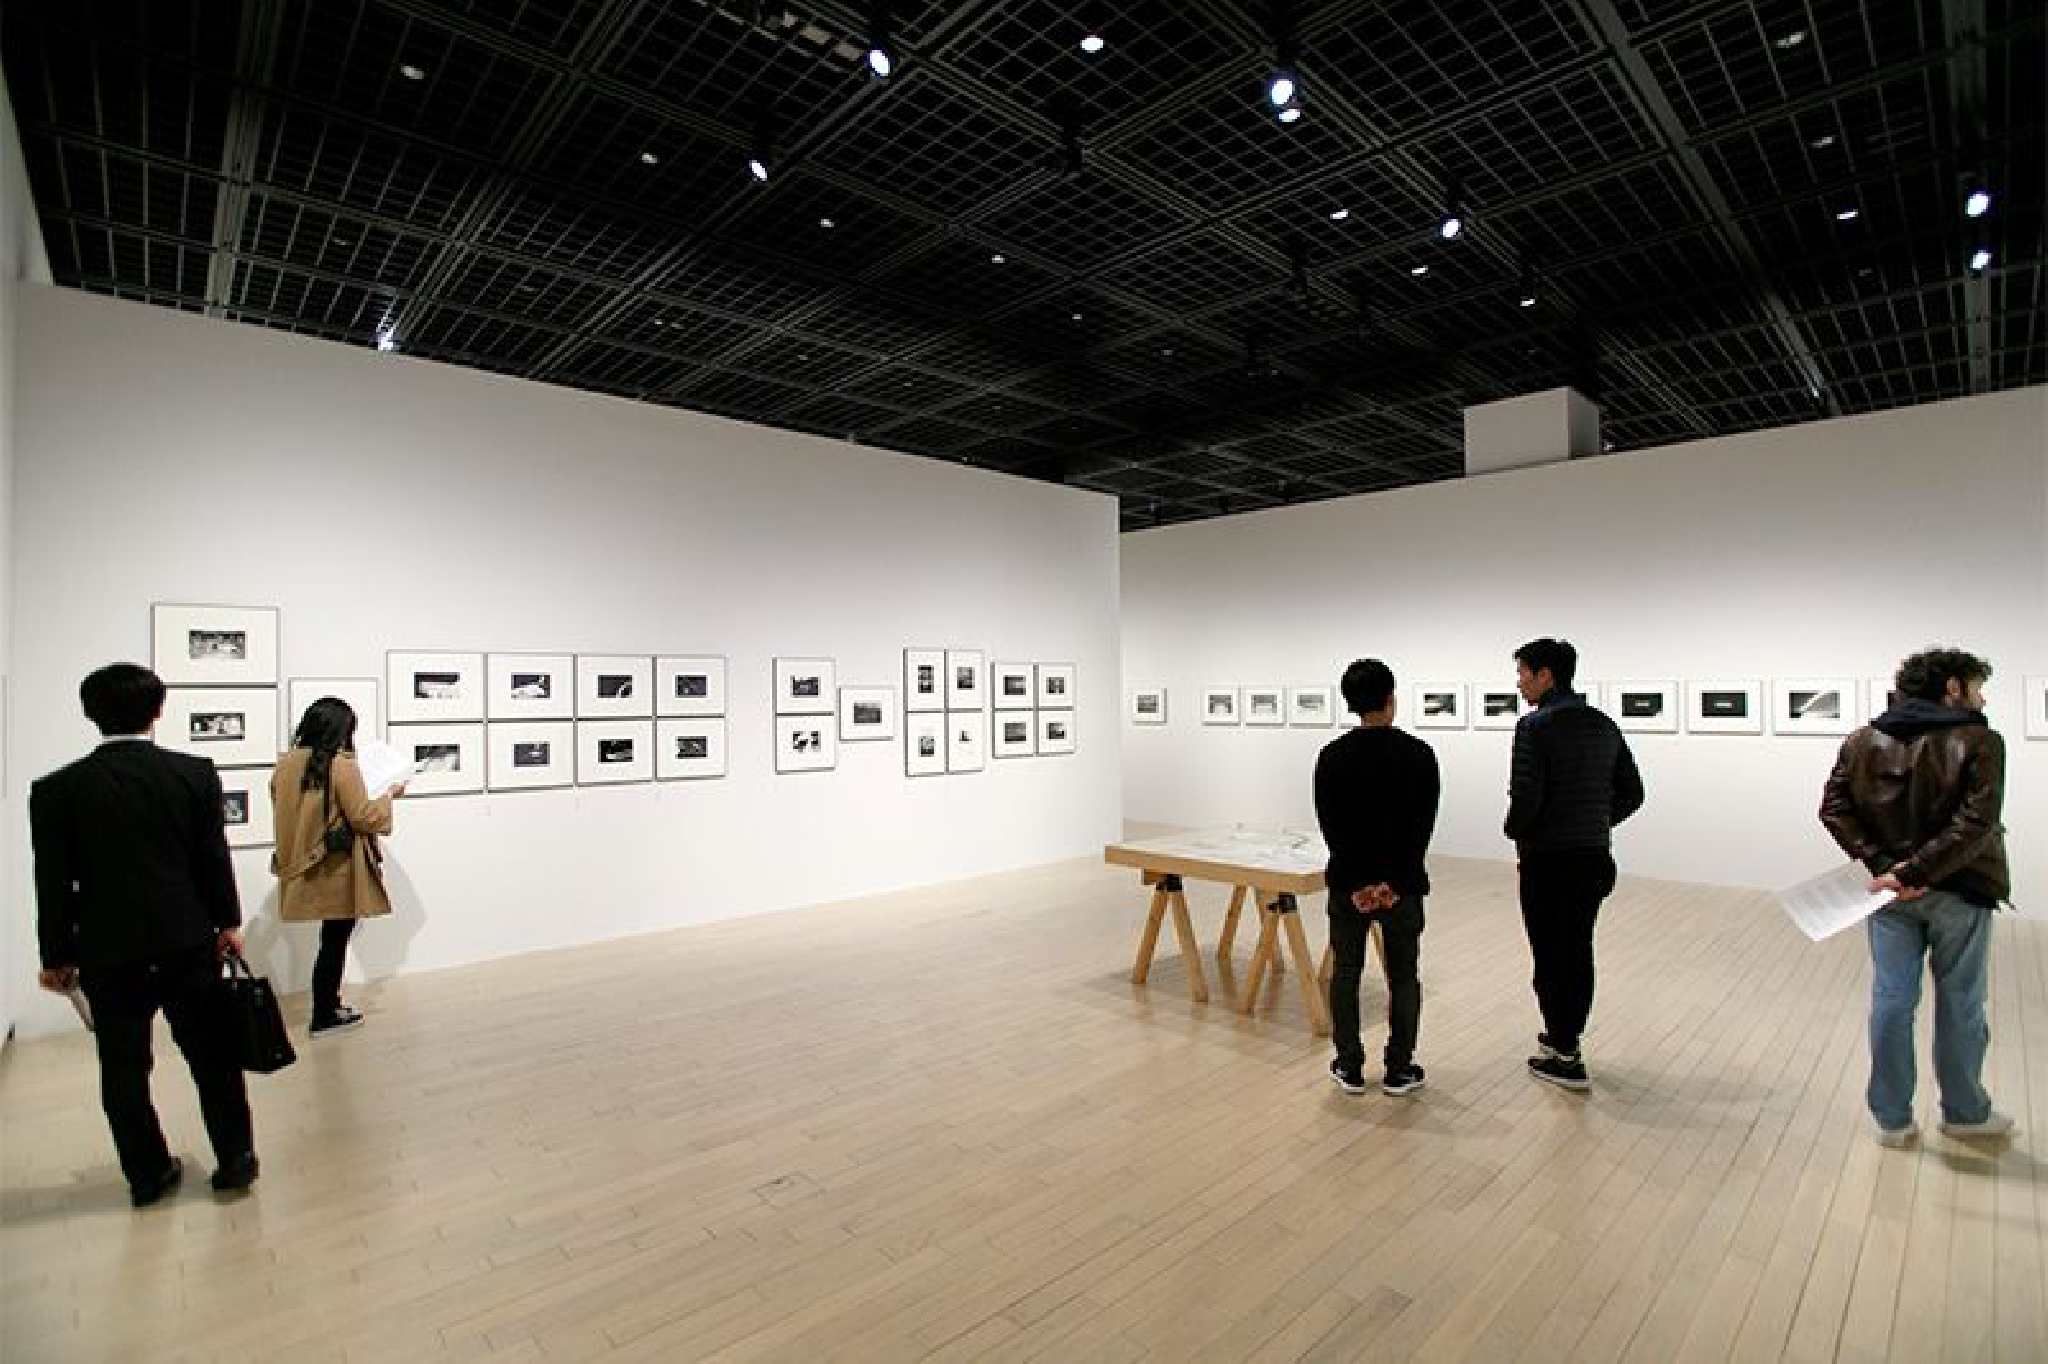 Đang tải tokyo-photographic-art-museum-bảo-tàng-nhiếp-ảnh-2.jpg…